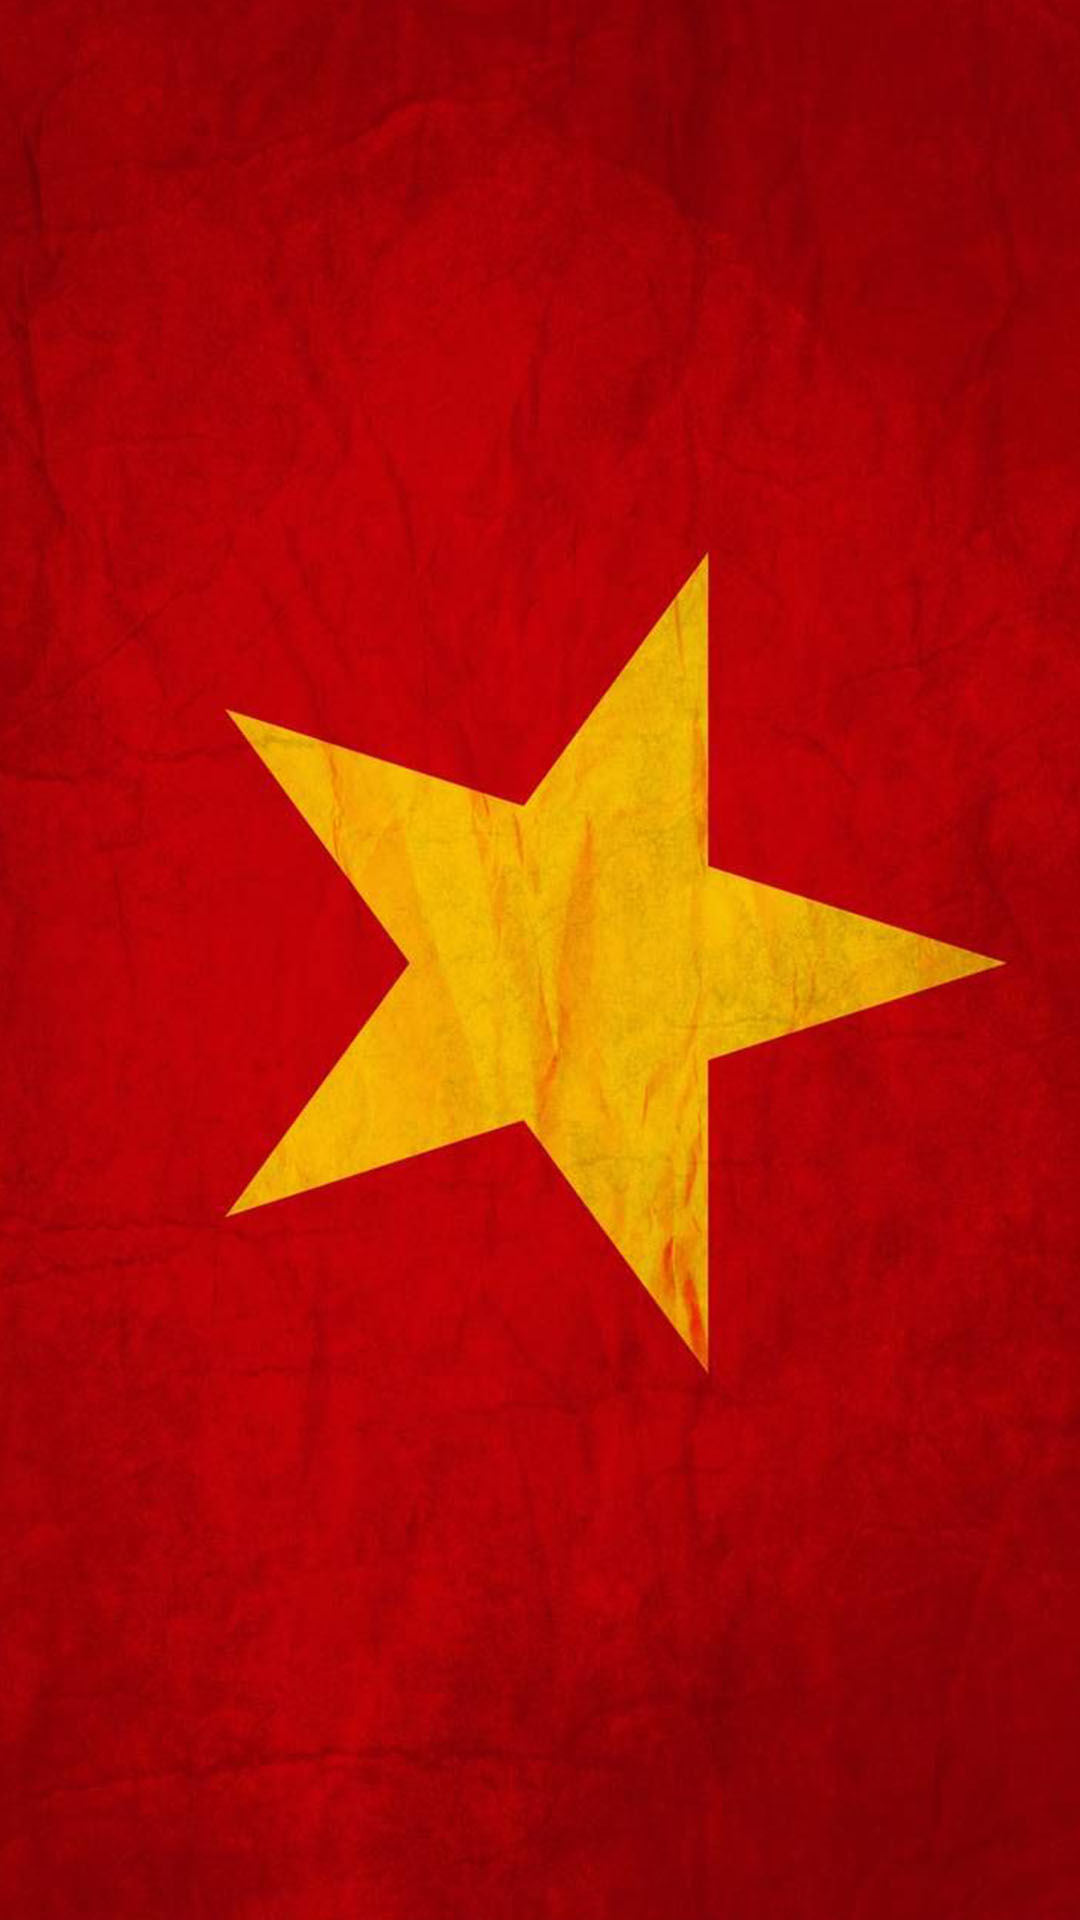 Hình nền cờ Việt Nam sẽ mang đến cho người dùng một nét lịch sự, đầy uy nghiêm, phù hợp với nhiều phong cách và nhu cầu sử dụng hình nền khác nhau. Hãy cảm nhận sự tự hào và yêu nước trong từng hình ảnh tuyệt đẹp này.